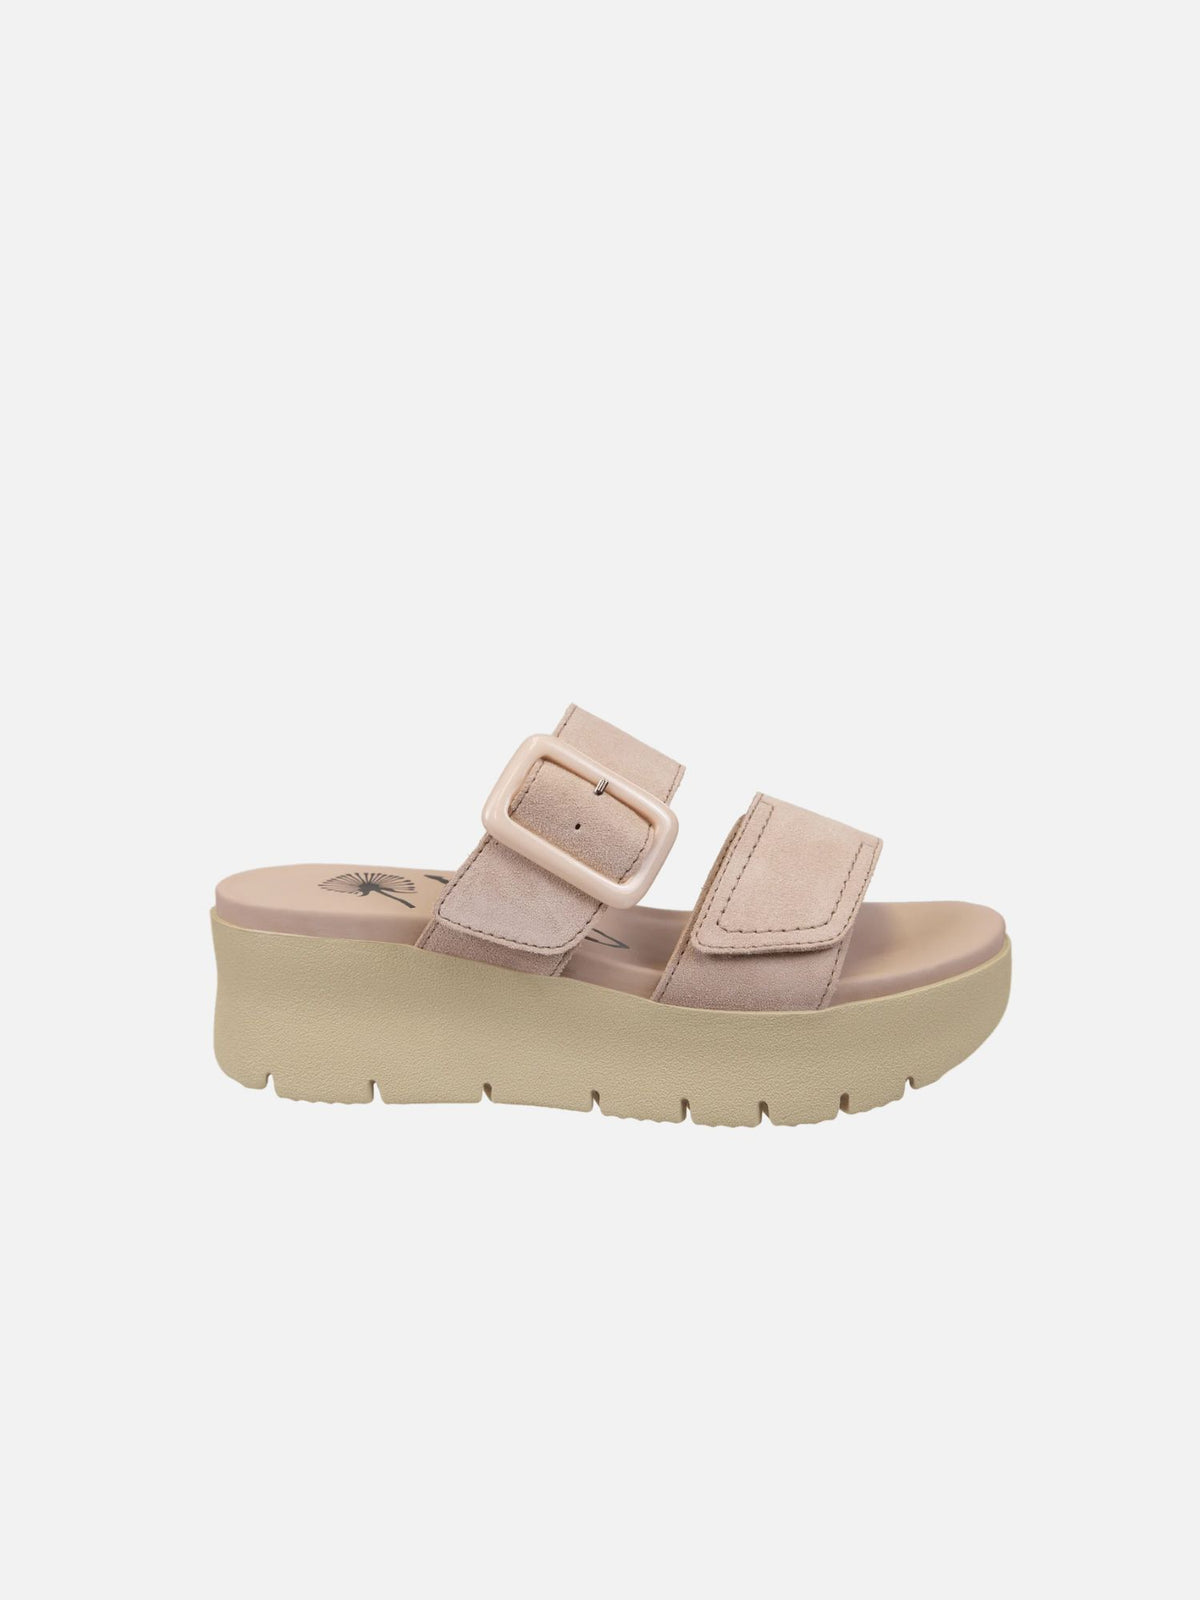 otbt cameo platform double strap sandal in beige-side